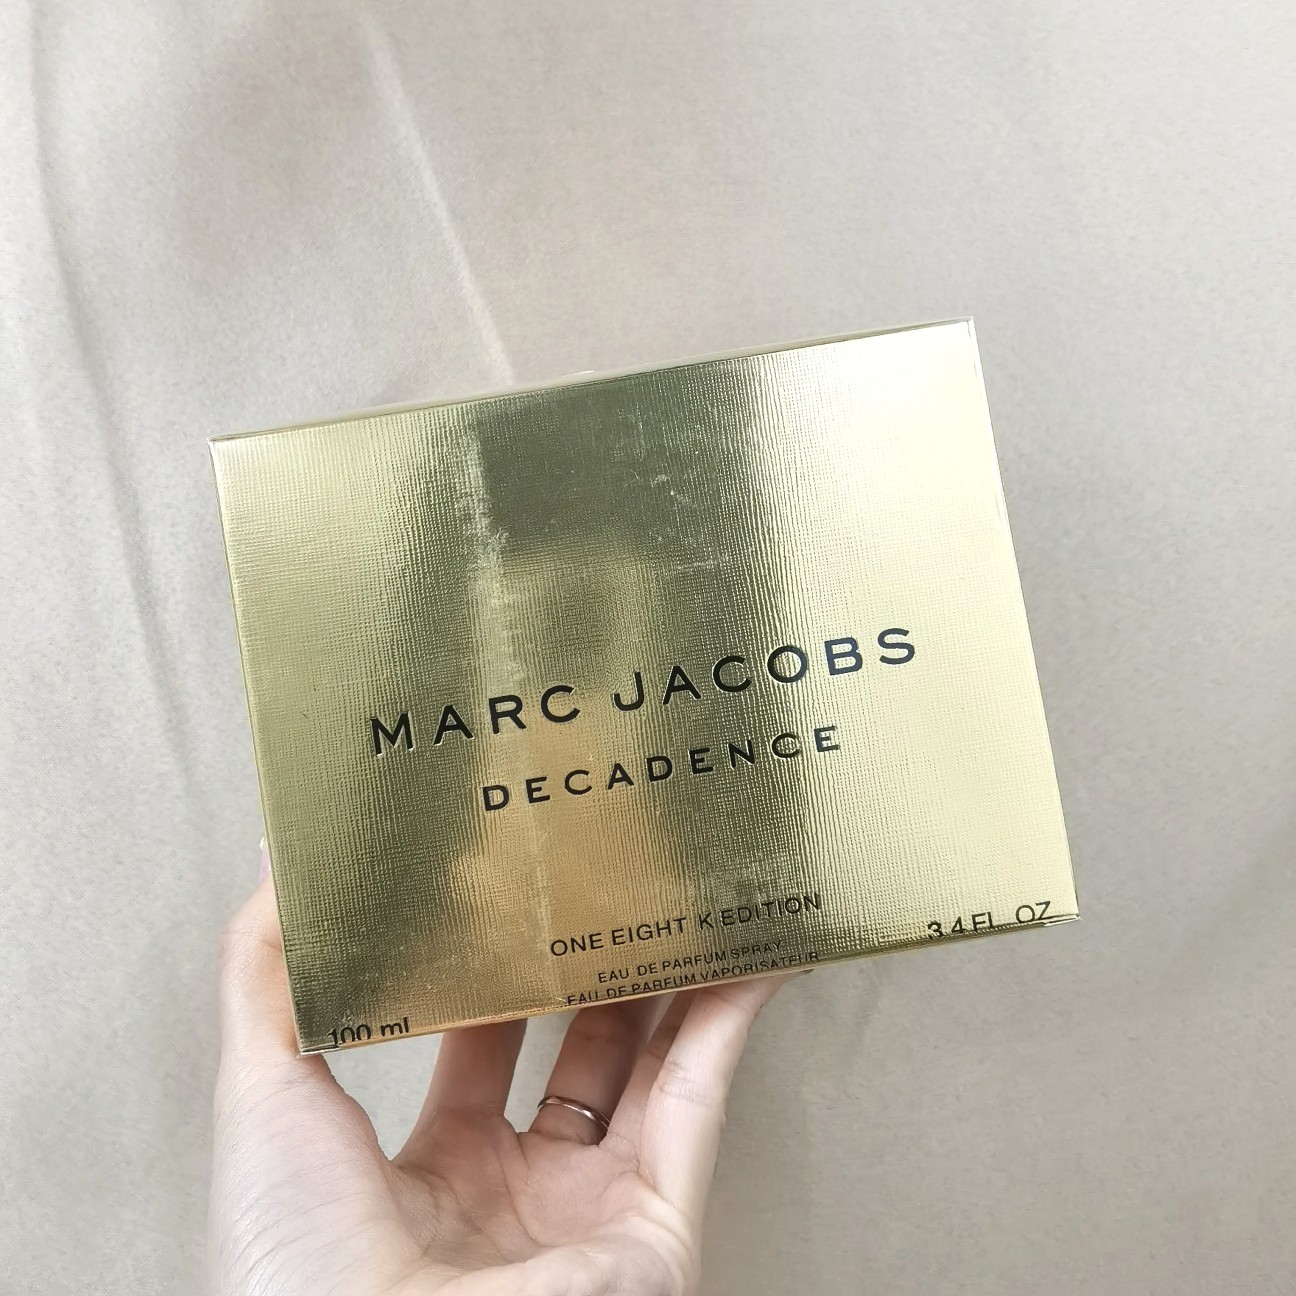 (Hàng Mới Về) Nước Hoa Marc Jacobs Decedence One Eight 18k Daisy Bag 100ml